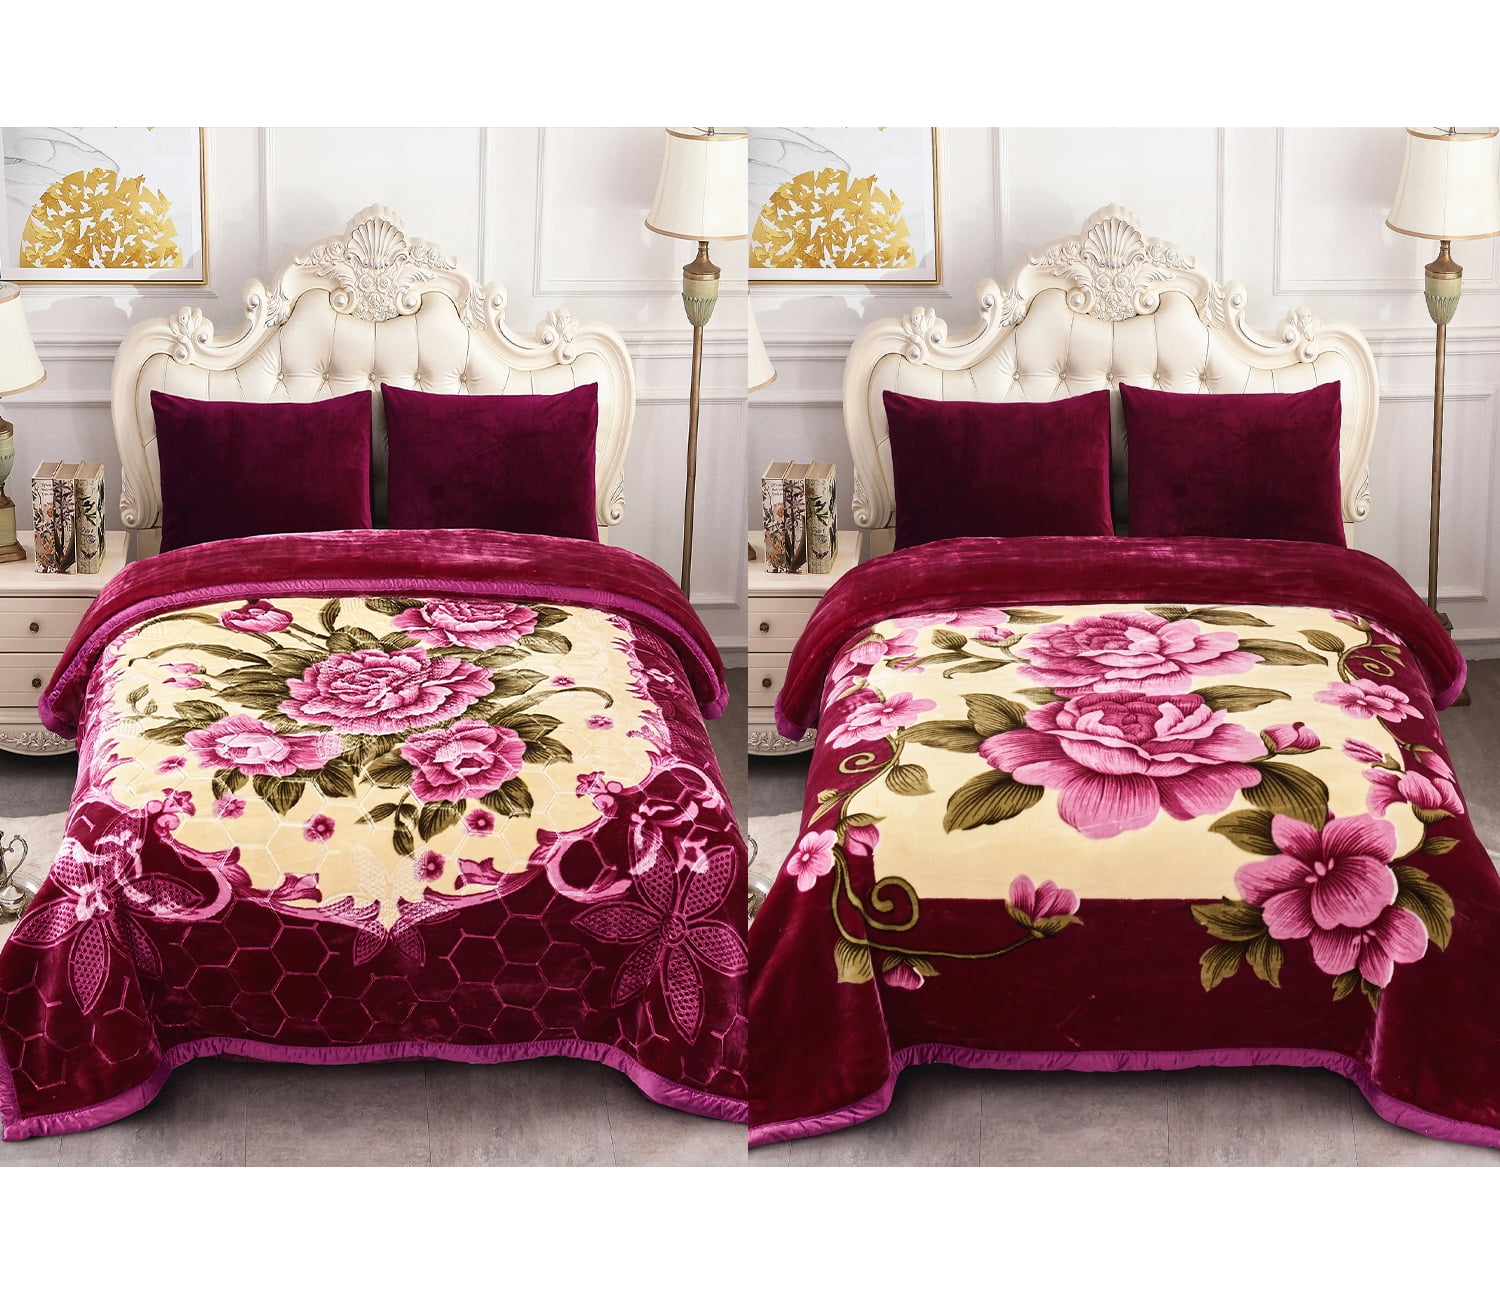 NC Queen Fleece Bed Blanket,2 Ply Heavy Thick Mink Blanket for